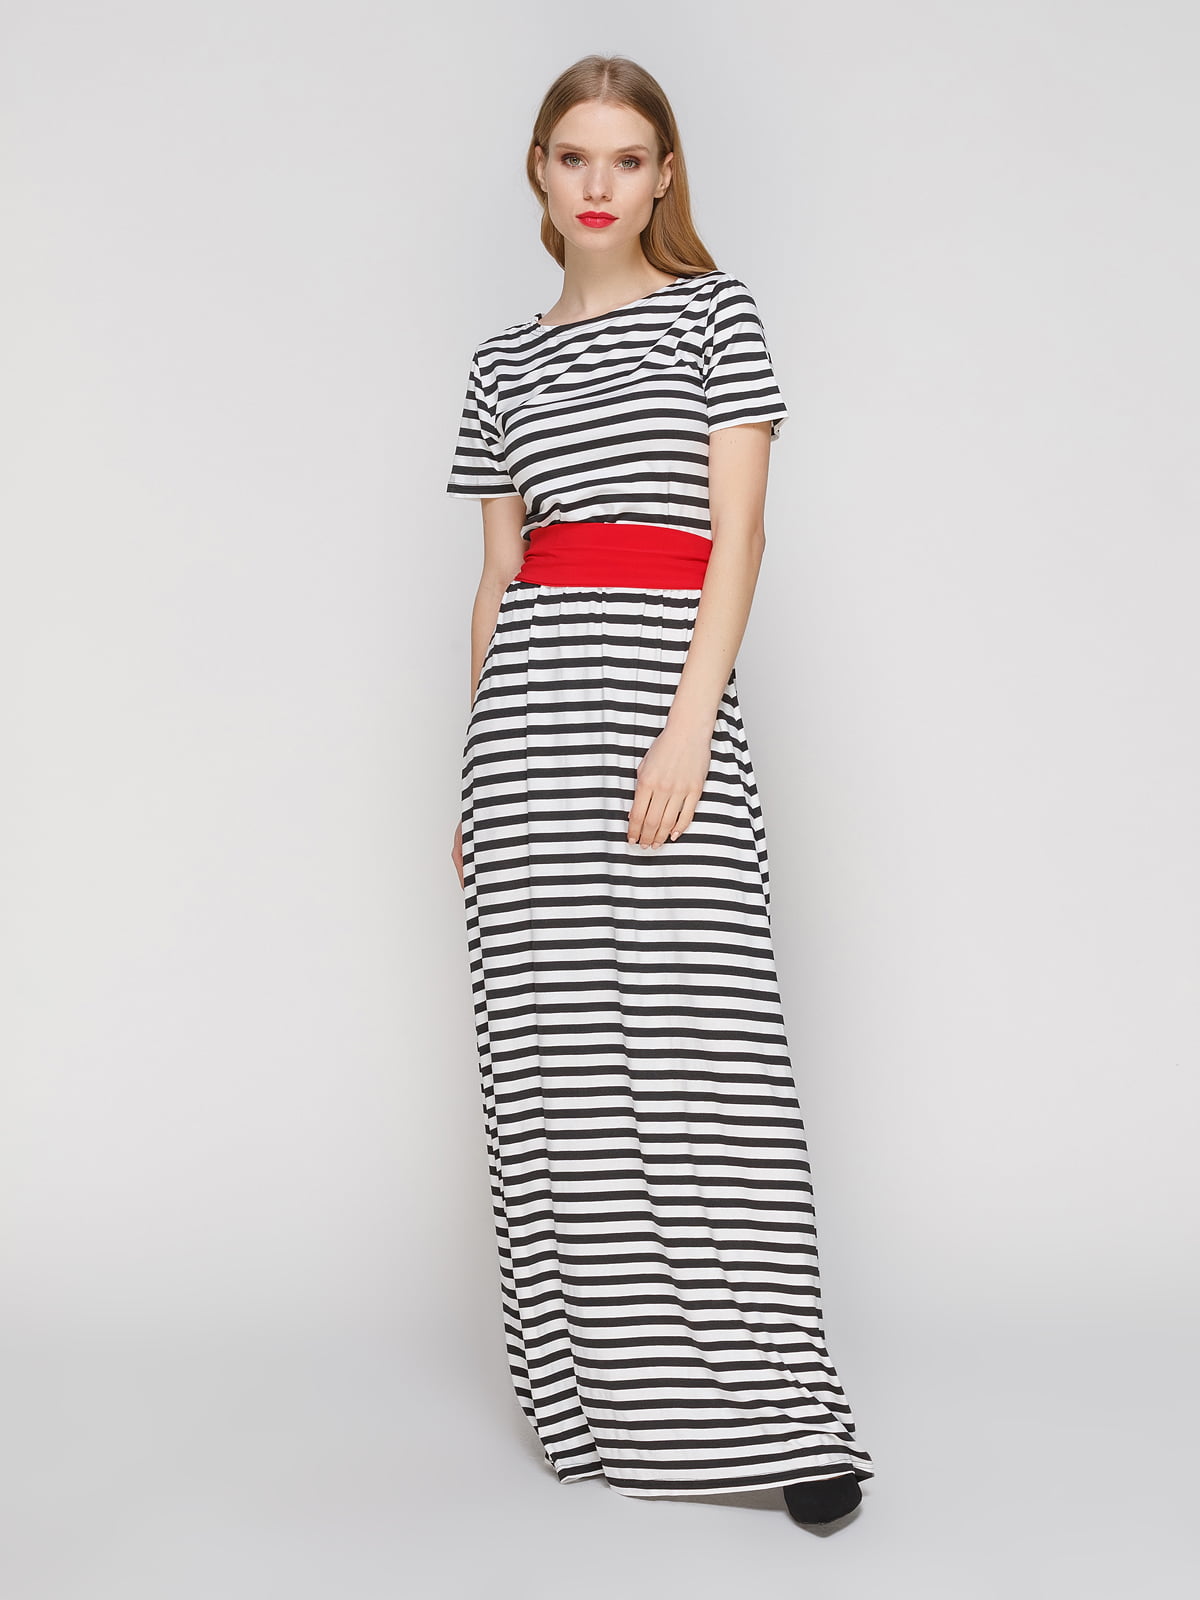 Сукня в чорно-білу смужку з червоним поясом | 3045906